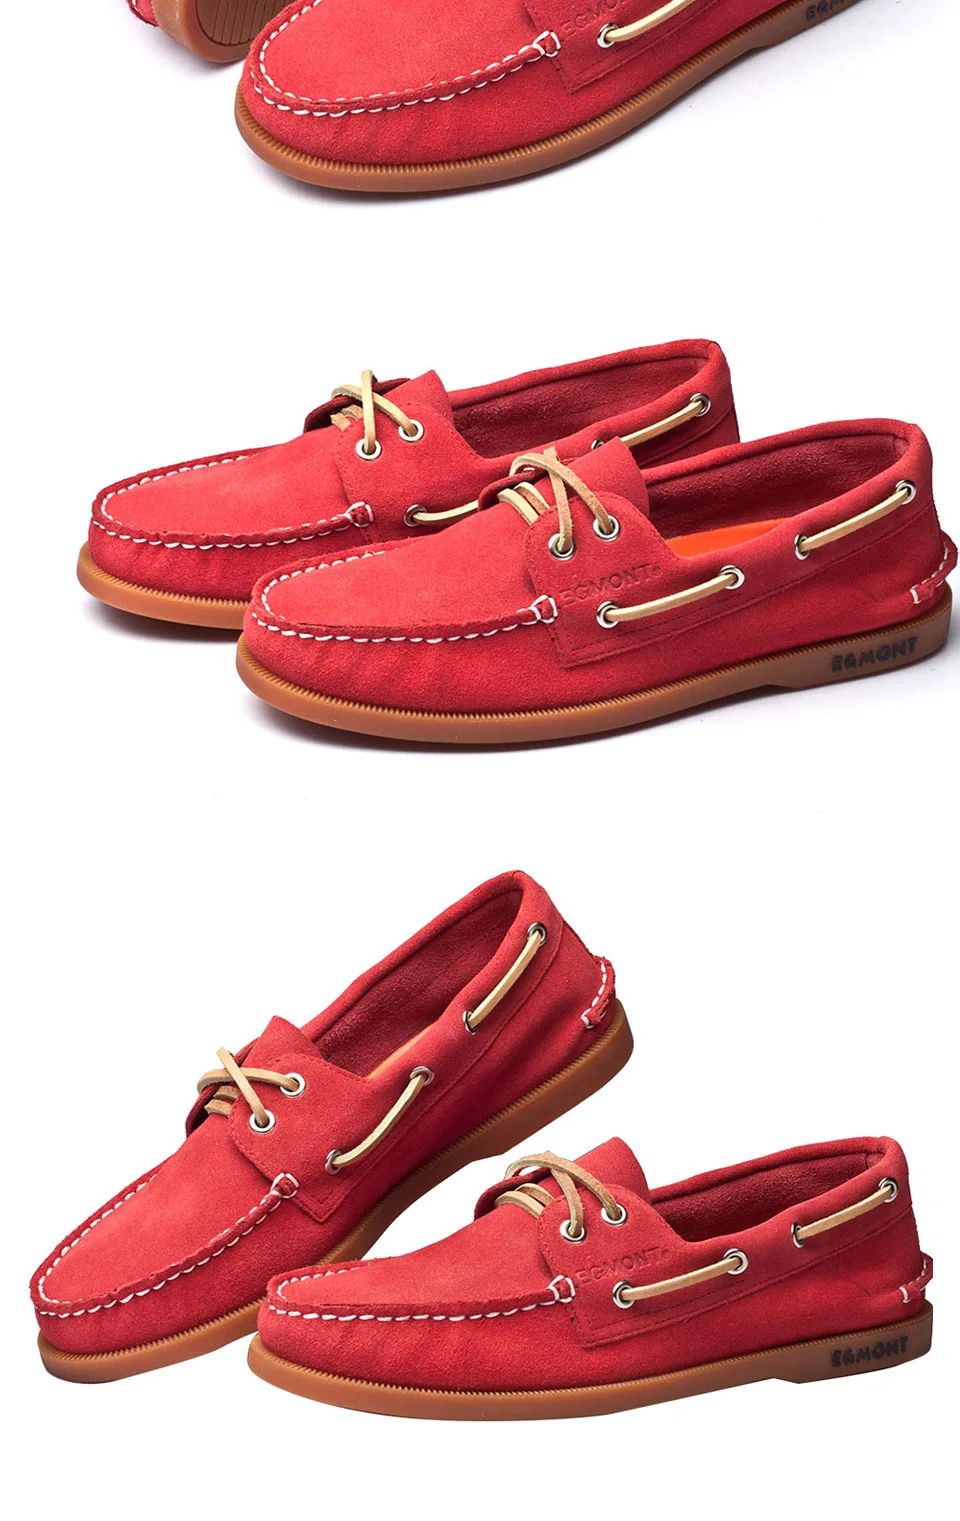 Эгмонт EG-52 красный сезон весна-лето водонепроницаемые мокасины мужская повседневная обувь лоферы из натуральной кожи ручной работы удобные дышащие